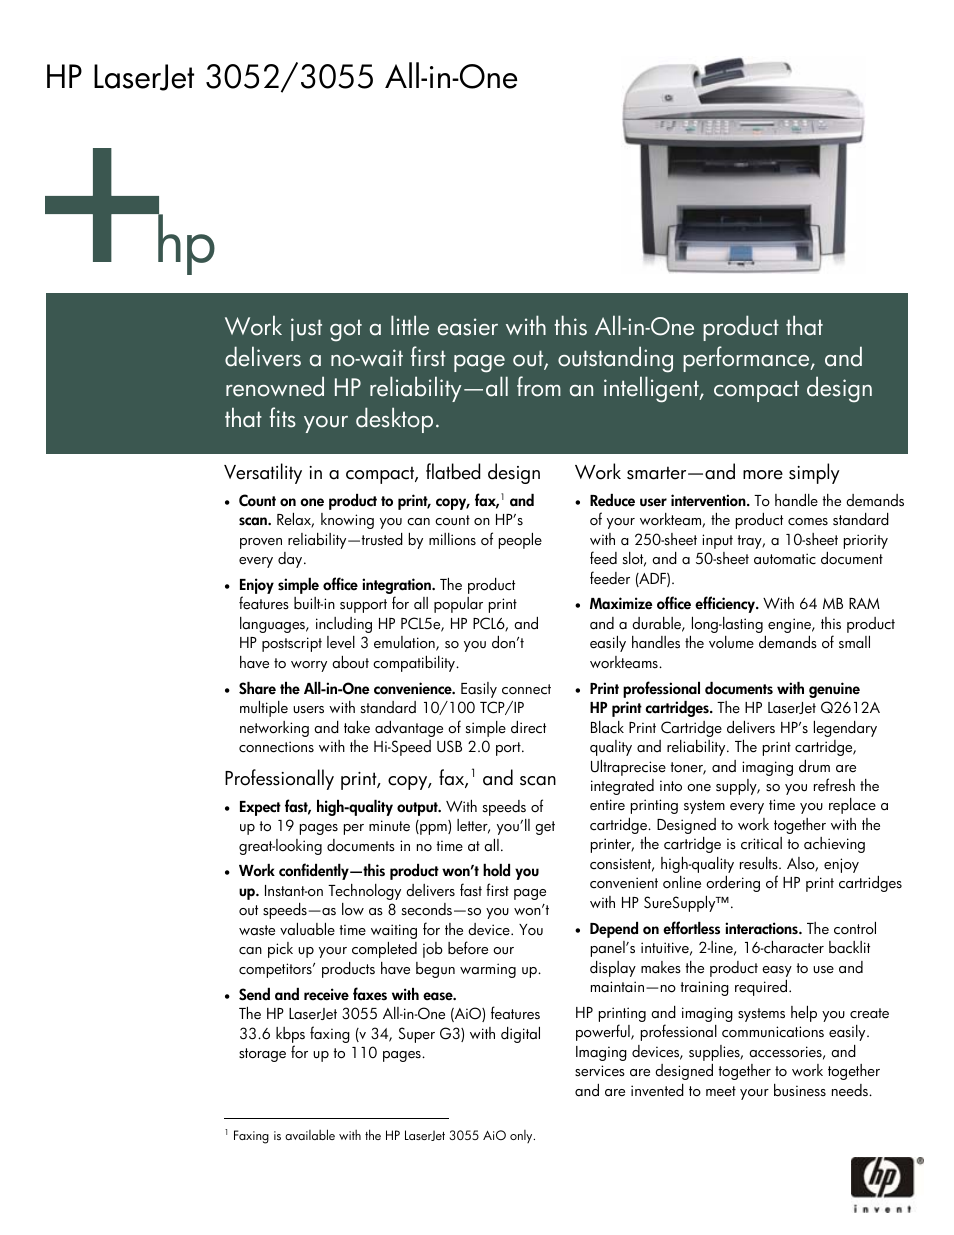 HP LaserJet 3055 User Manual | 4 pages | Also for: LaserJet 3052